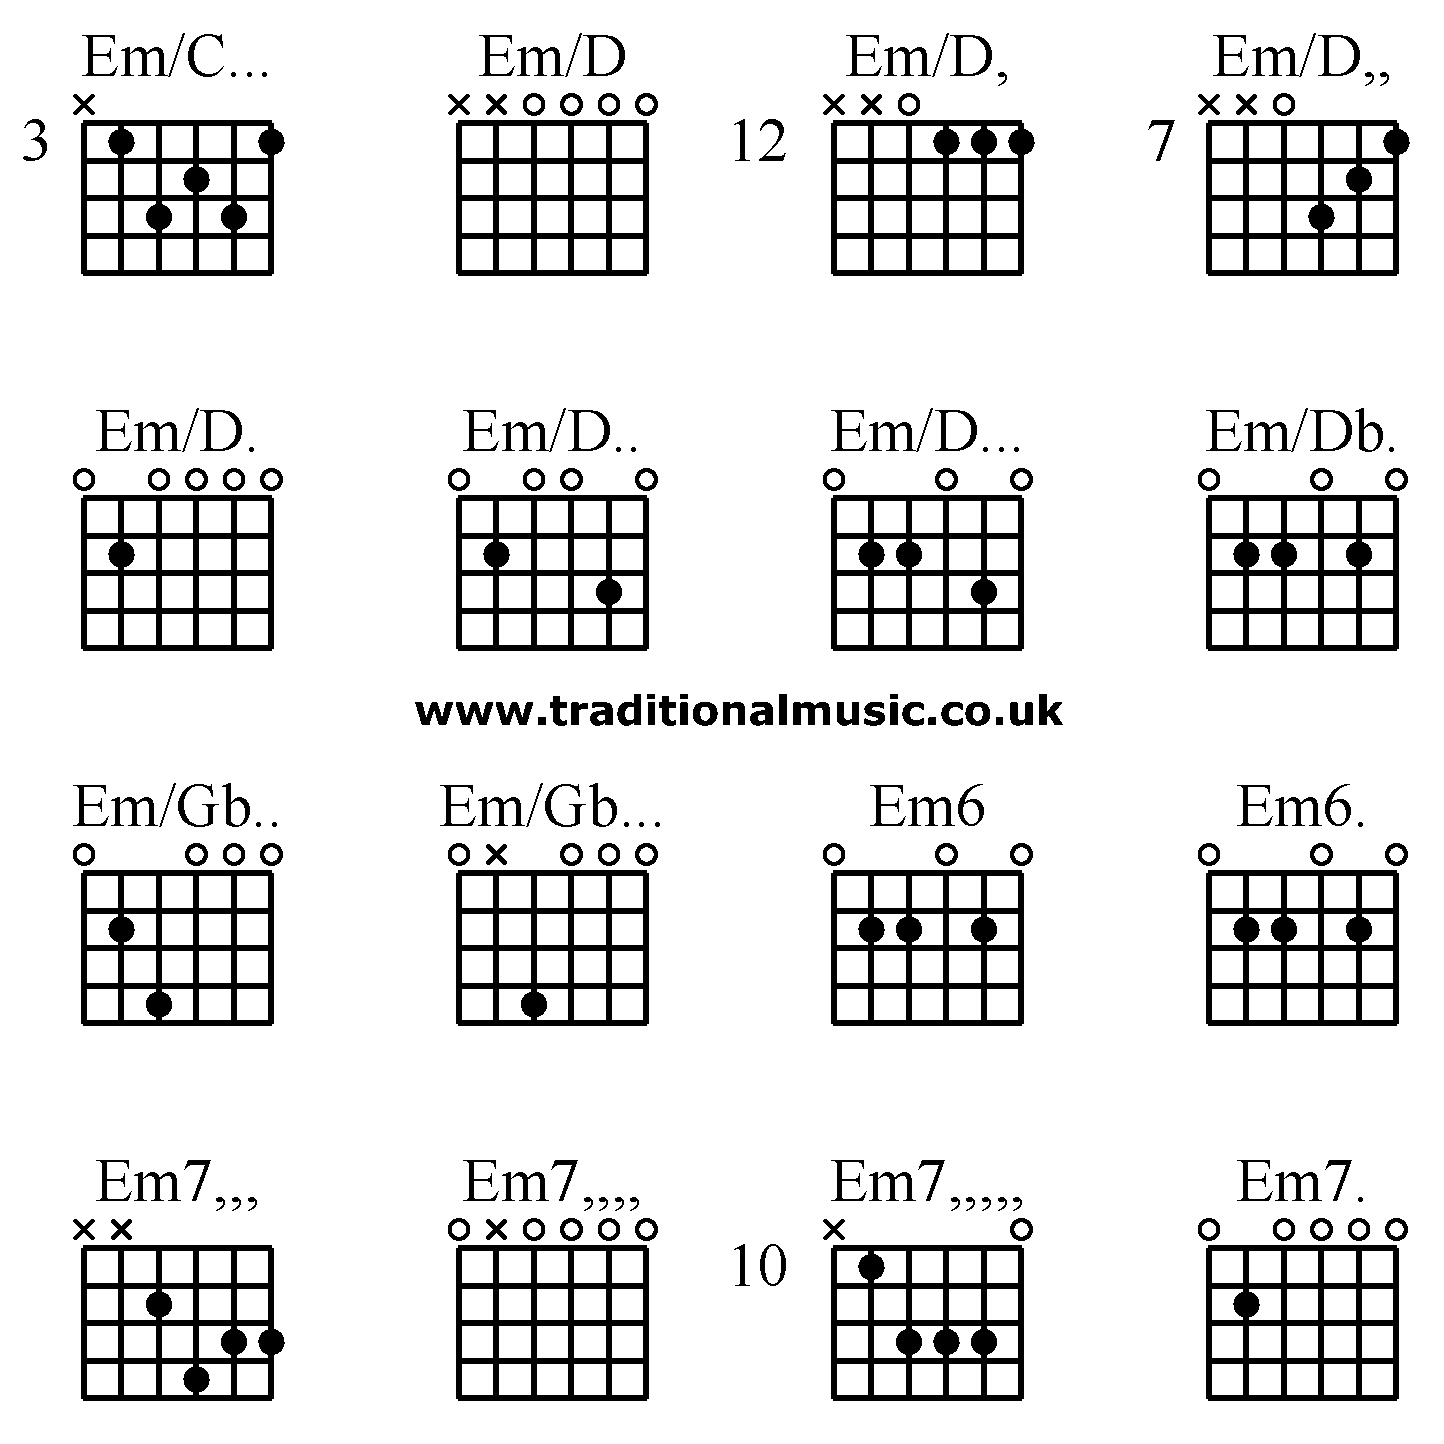 Em7 Guitar Chord Guitar Chords Advanced Emc Emd Emd Emd Emd Emd Emd Em